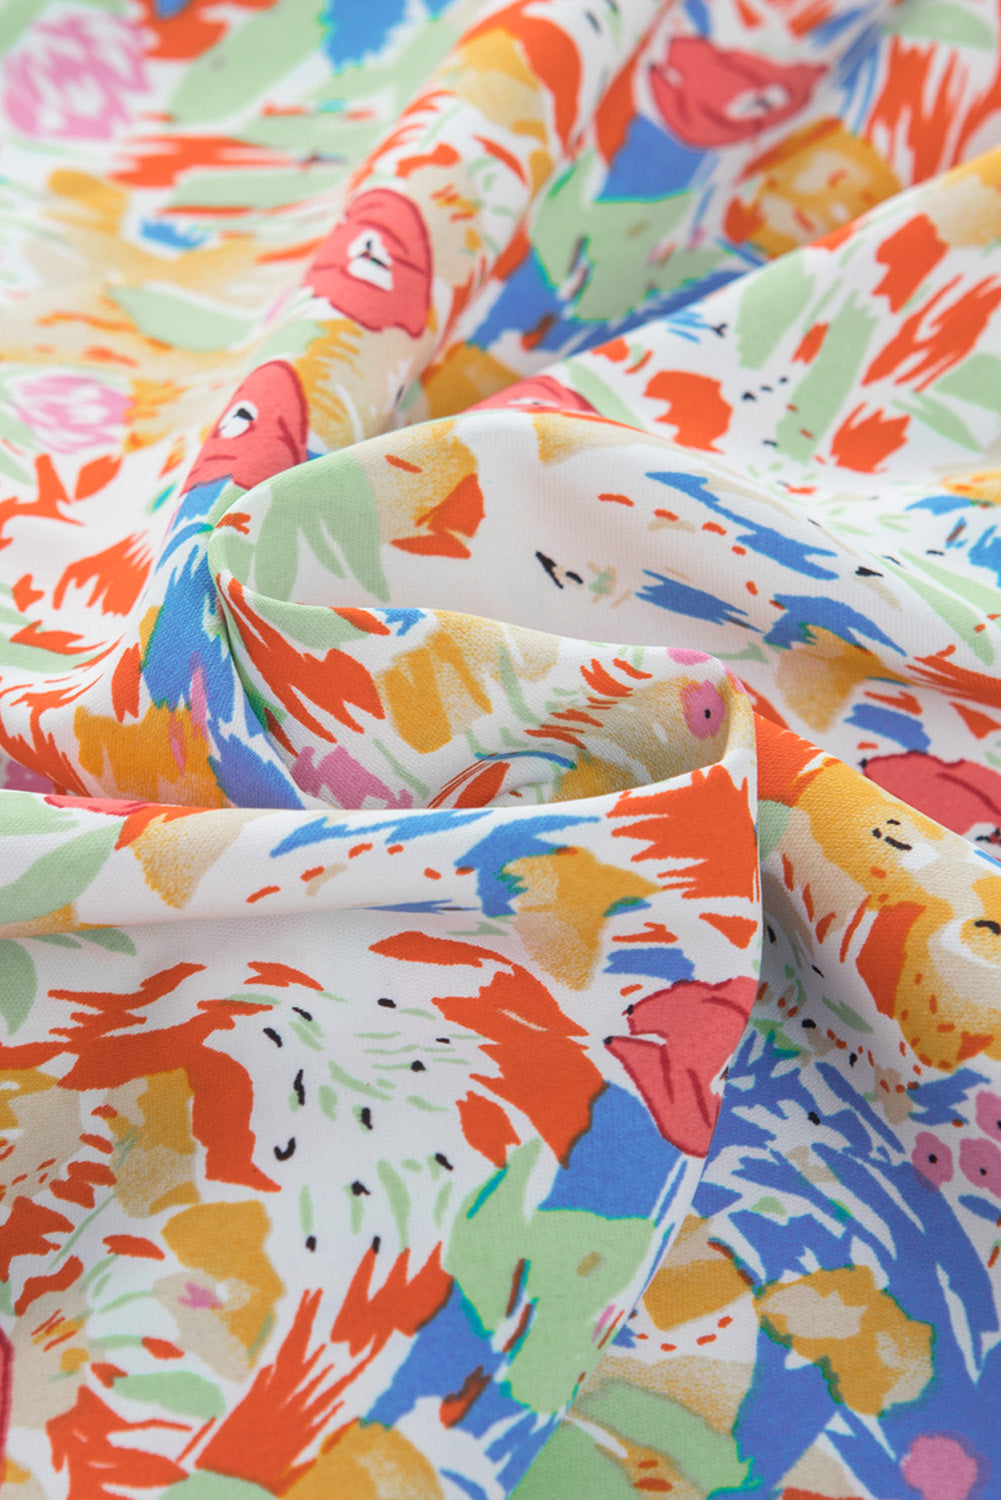 Mehrfarbige Bluse mit gesmokten Puffärmeln und abstraktem Print